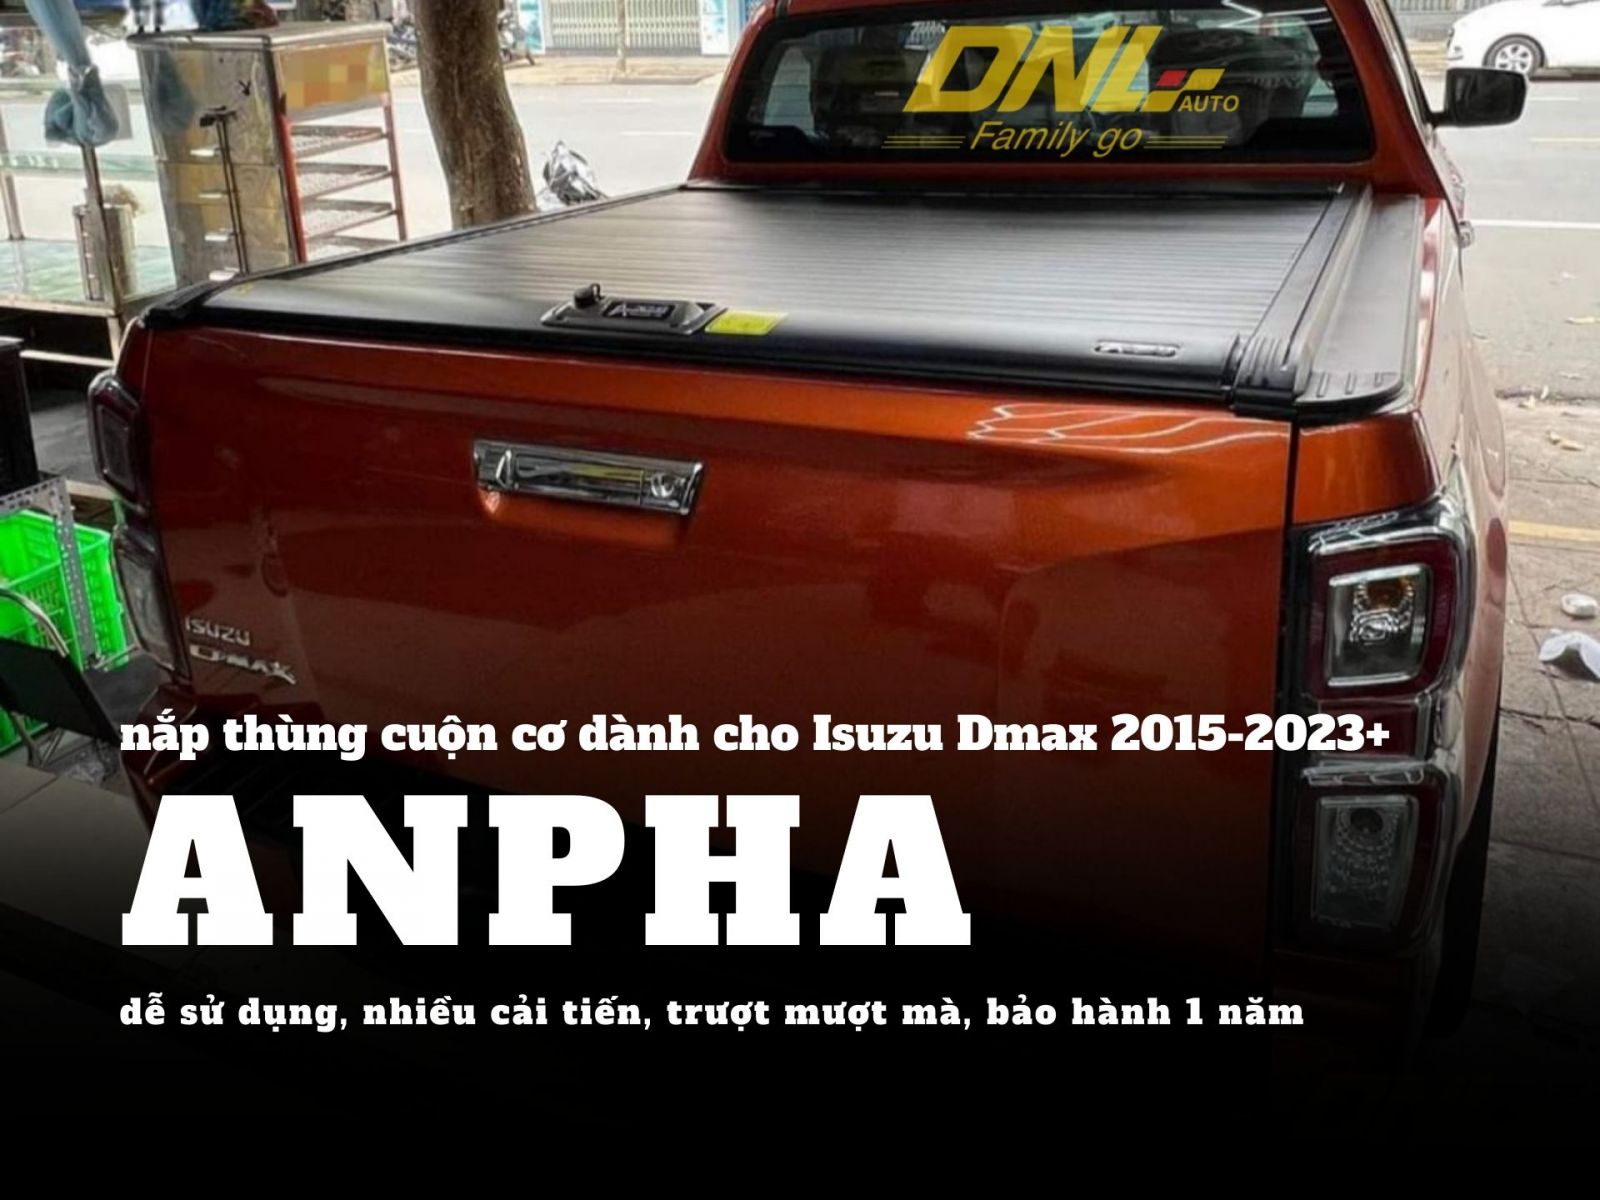 nắp thùng cuộn cơ Anpha dành cho Isuzu Dmax tại DNL Auto